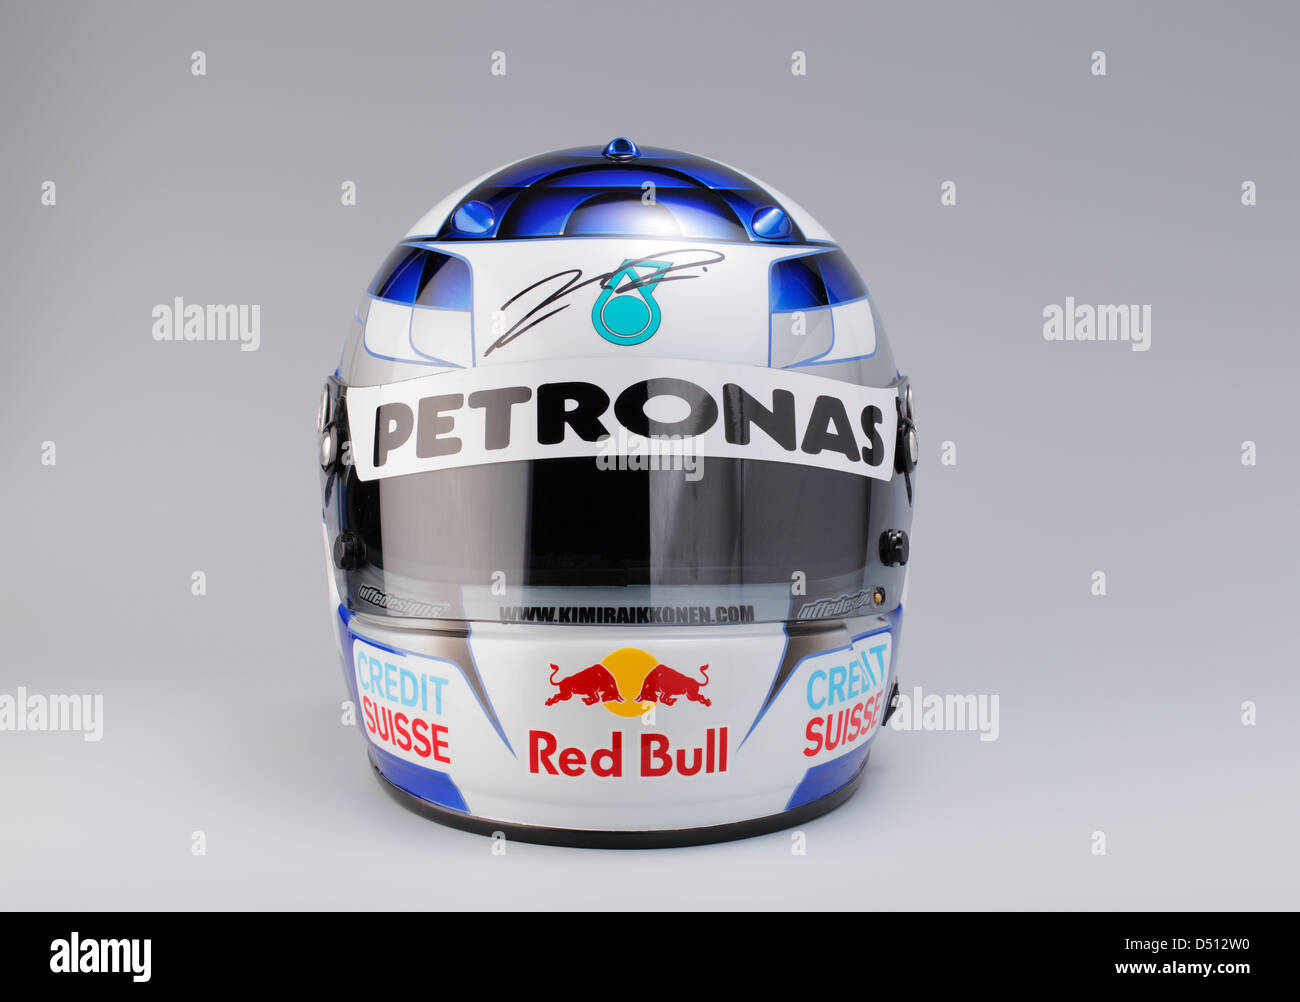 Autografiada Casco de piloto de F1 Kimi Raikkonen. Red Bull Sauber Petronas en 2001. Foto de stock